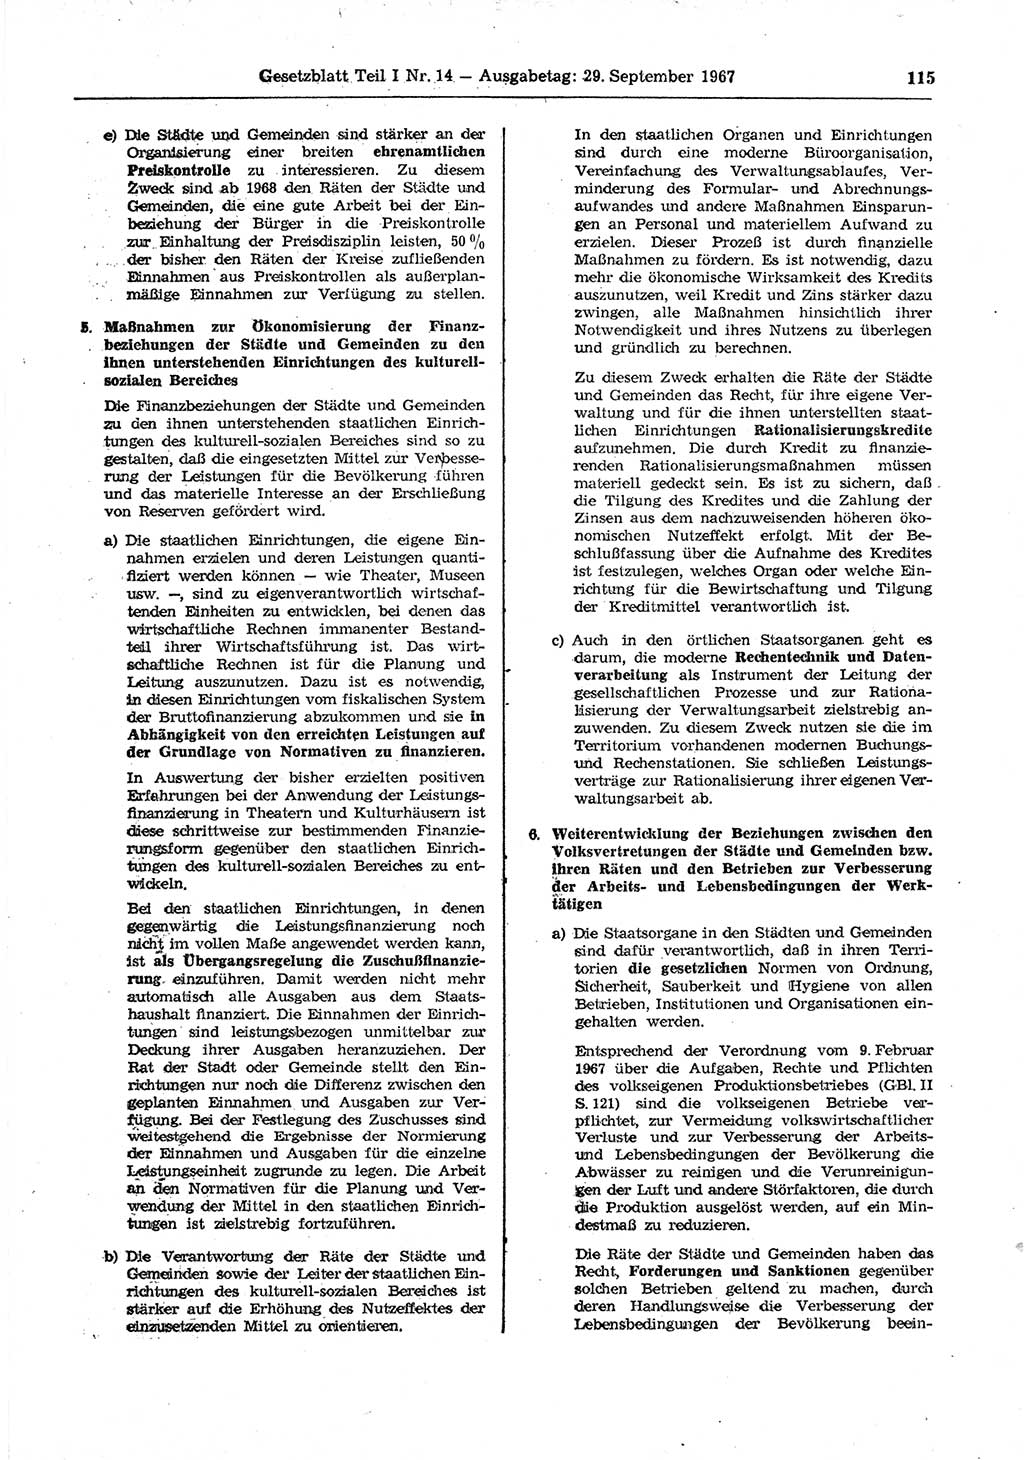 Gesetzblatt (GBl.) der Deutschen Demokratischen Republik (DDR) Teil Ⅰ 1967, Seite 115 (GBl. DDR Ⅰ 1967, S. 115)